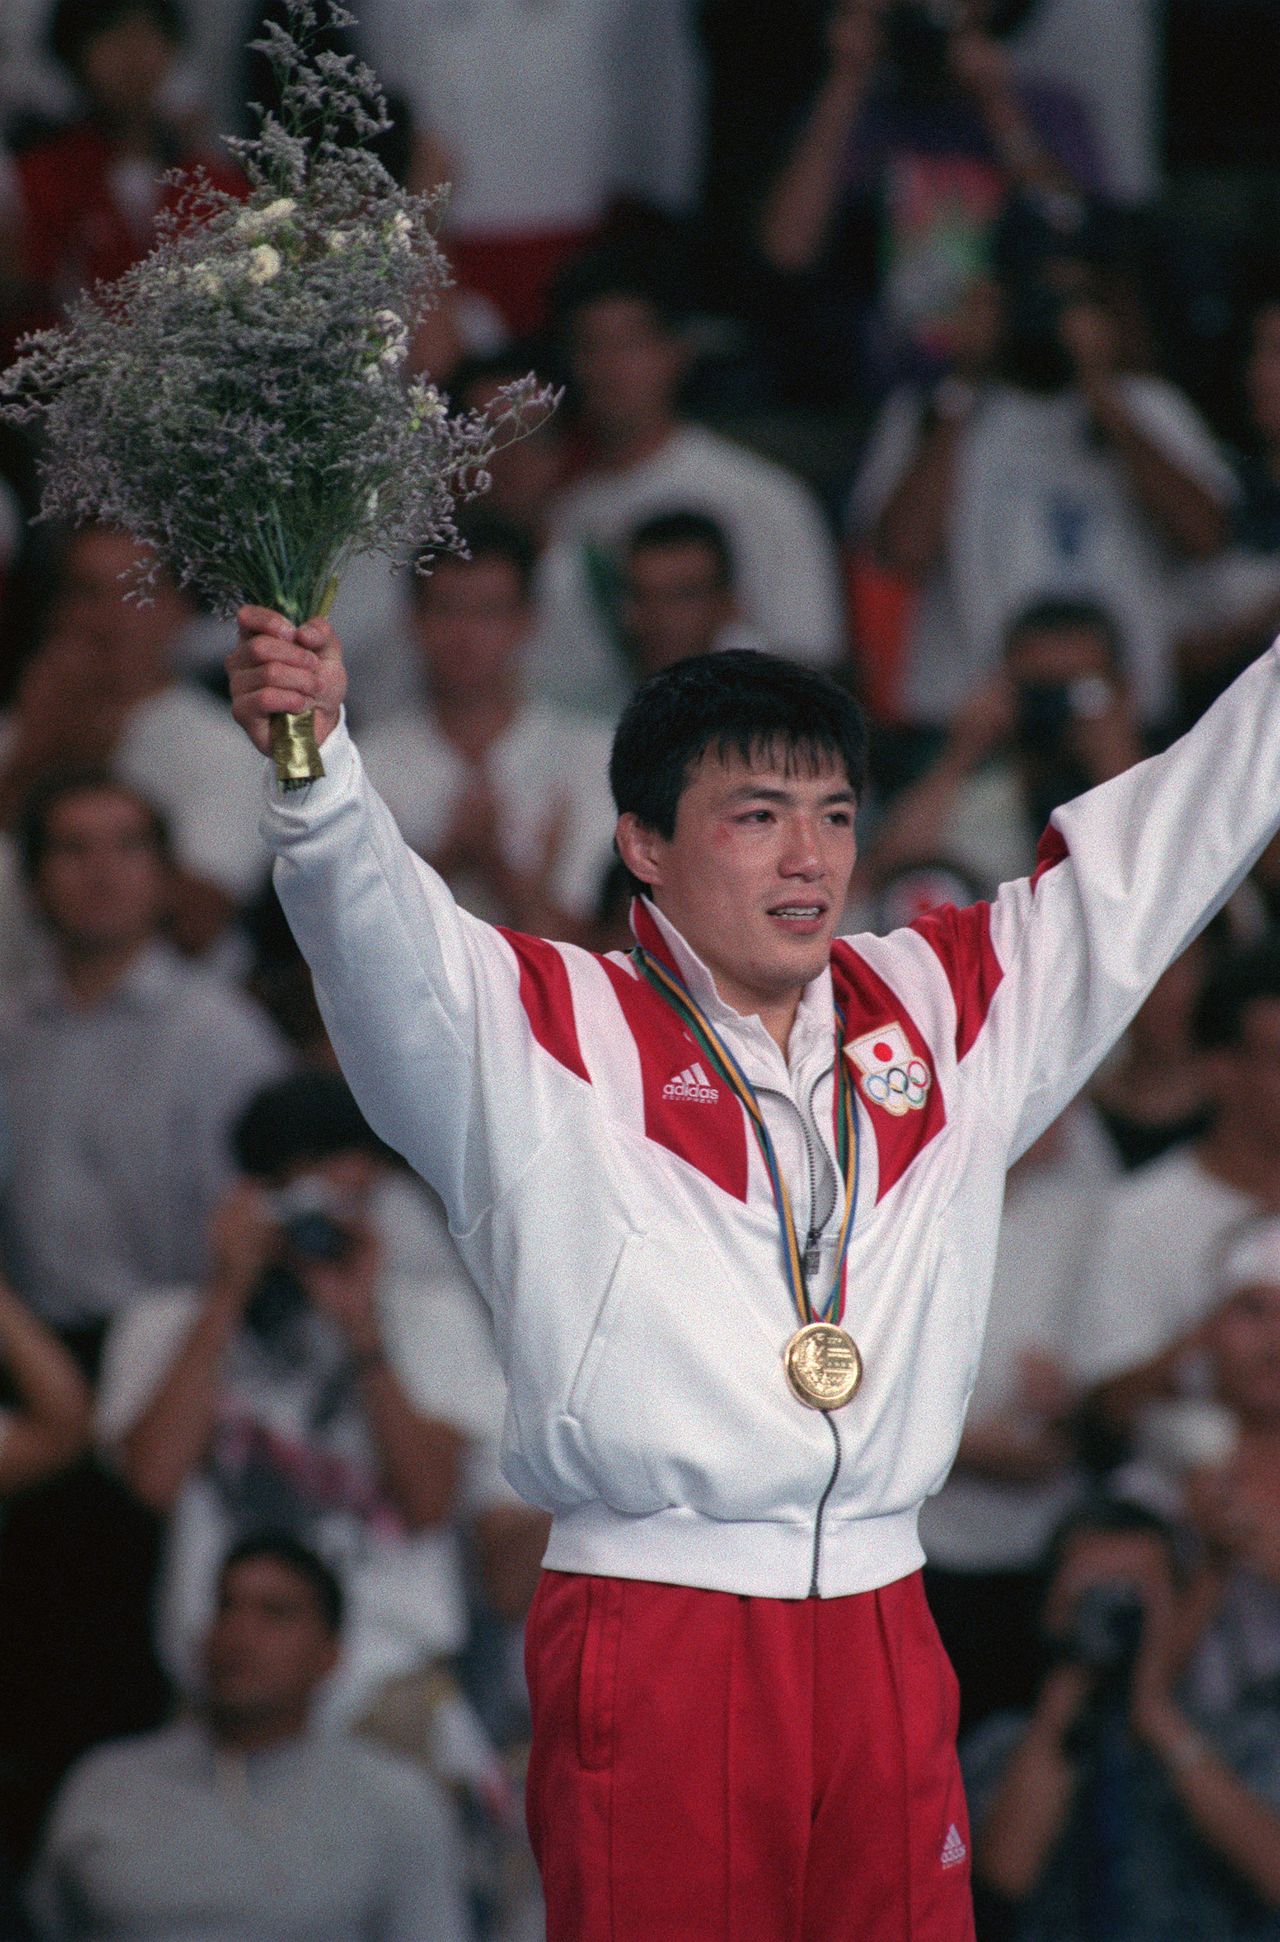 Кога Тосихико с золотой медалью на груди за победу в соревнованиях по дзюдо в мужской категории до 71 килограмма на церемонии награждения, 31 июля 1992 года, Испания, Барселона (© Jiji Press)